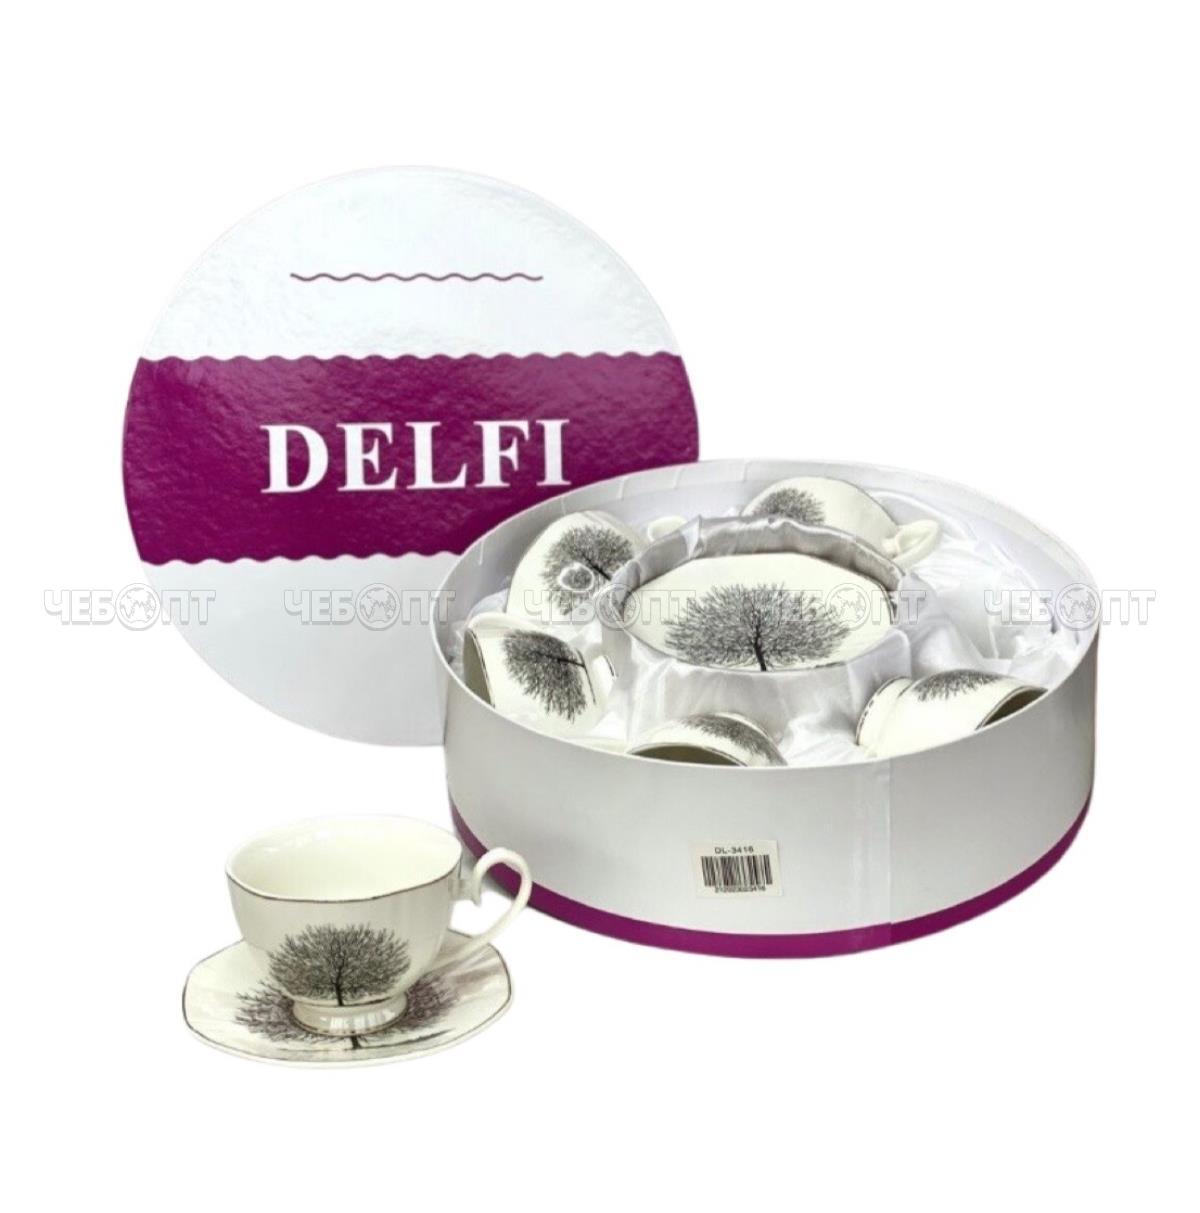 Сервиз чайный 12 предметов DELFI круг (6 чашек 250 мл, 6 блюдц 14 см) фарфор арт. 97128, DL-3416 [6] VALLEYA. ЧЕБОПТ.